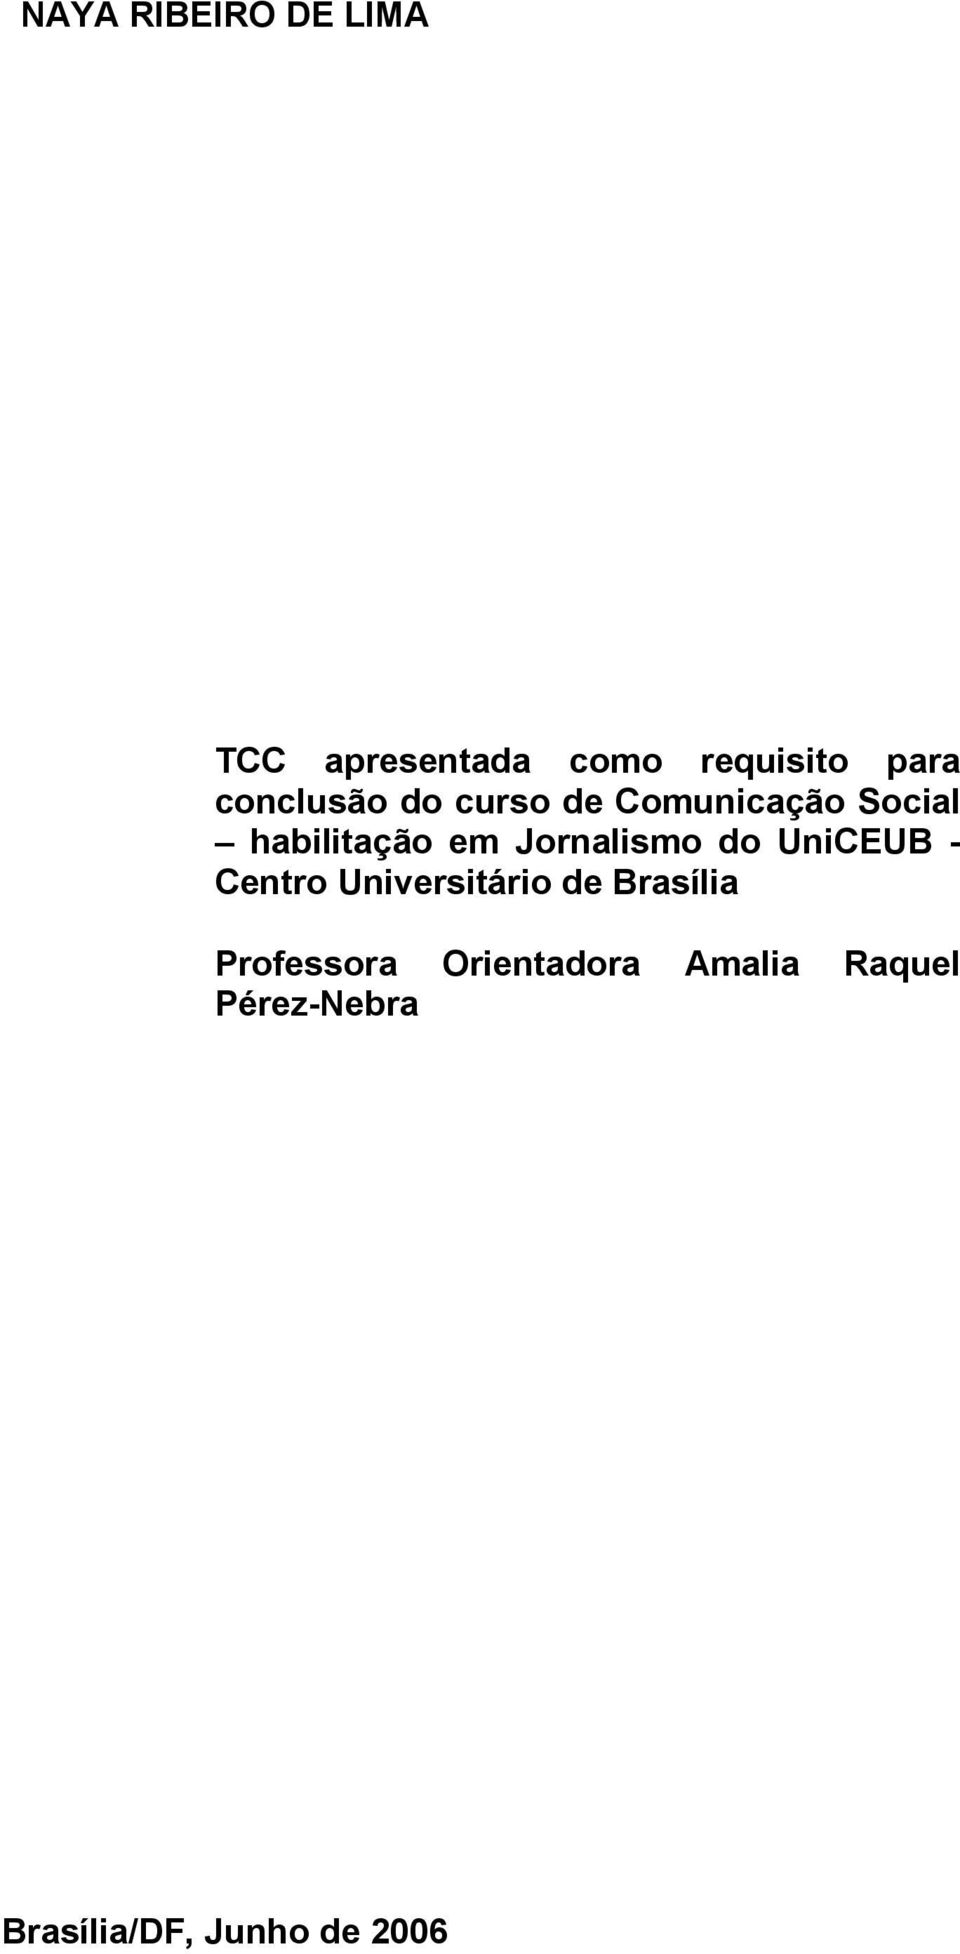 Jornalismo do UniCEUB - Centro Universitário de Brasília